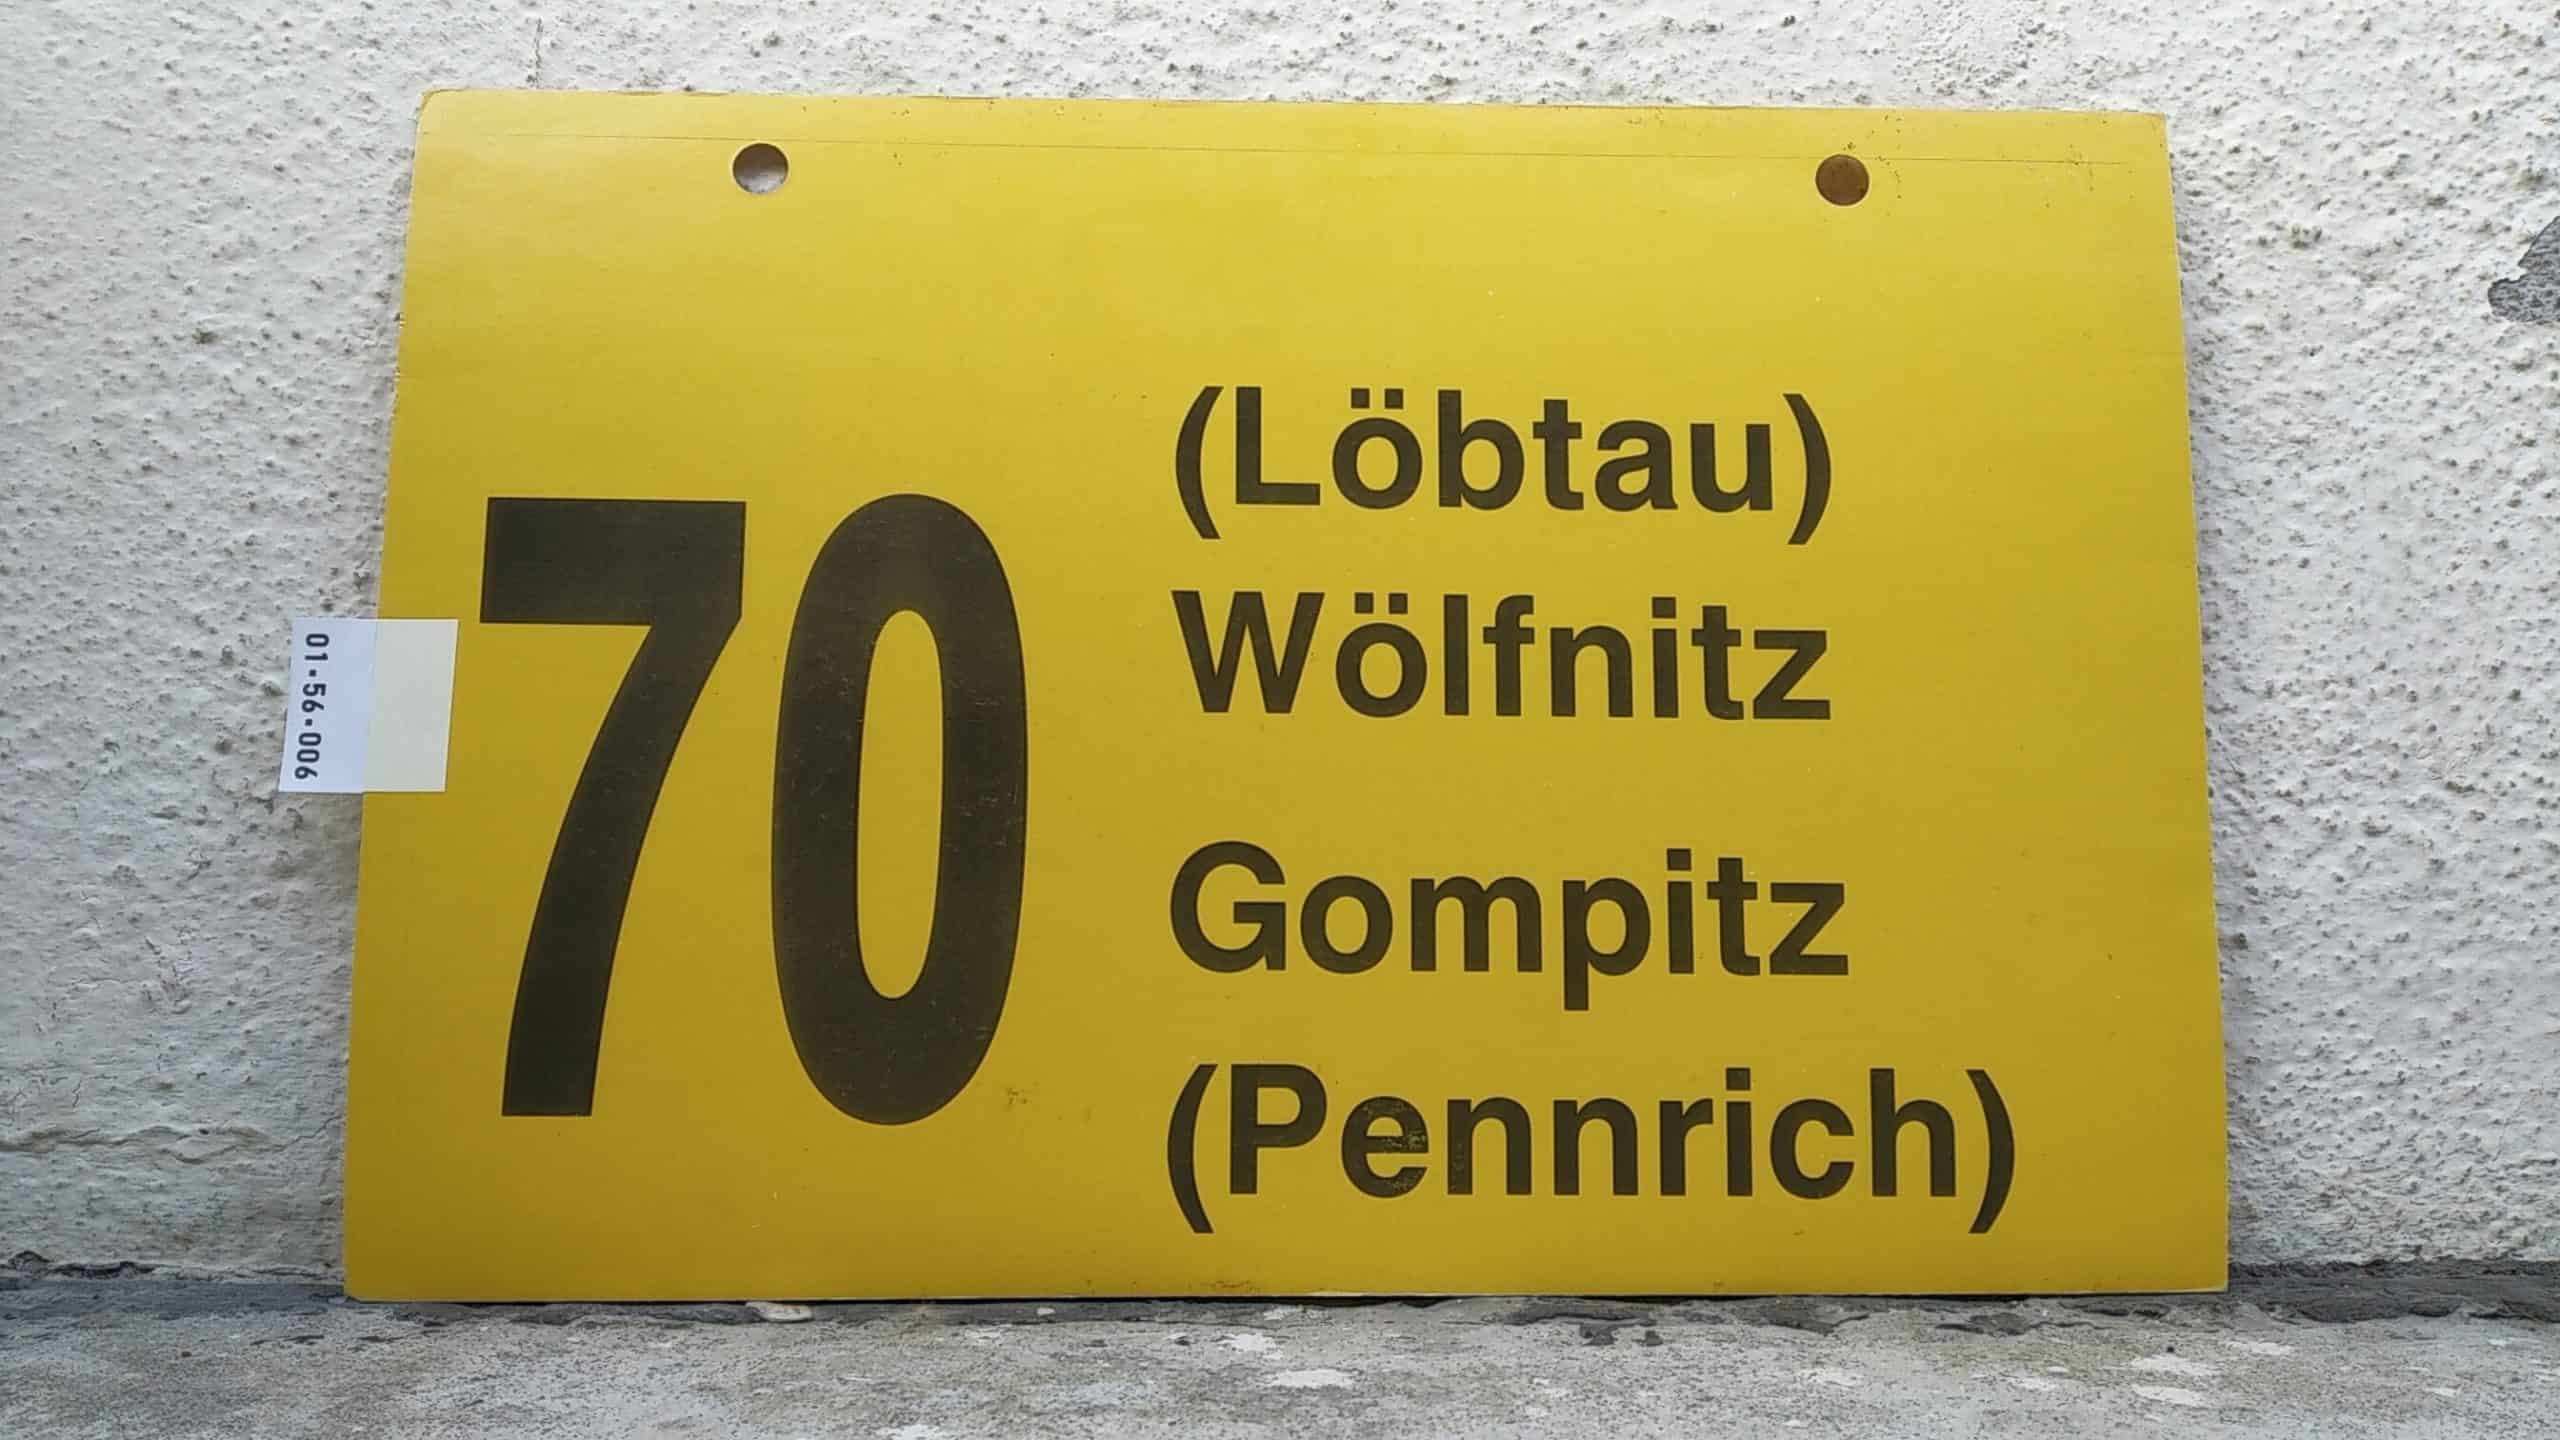 Ein seltenes Bus-Linienschild aus Dresden der Linie 70 von Löbtau (Wölfnitz) nach Gompitz (Pennrich) #1